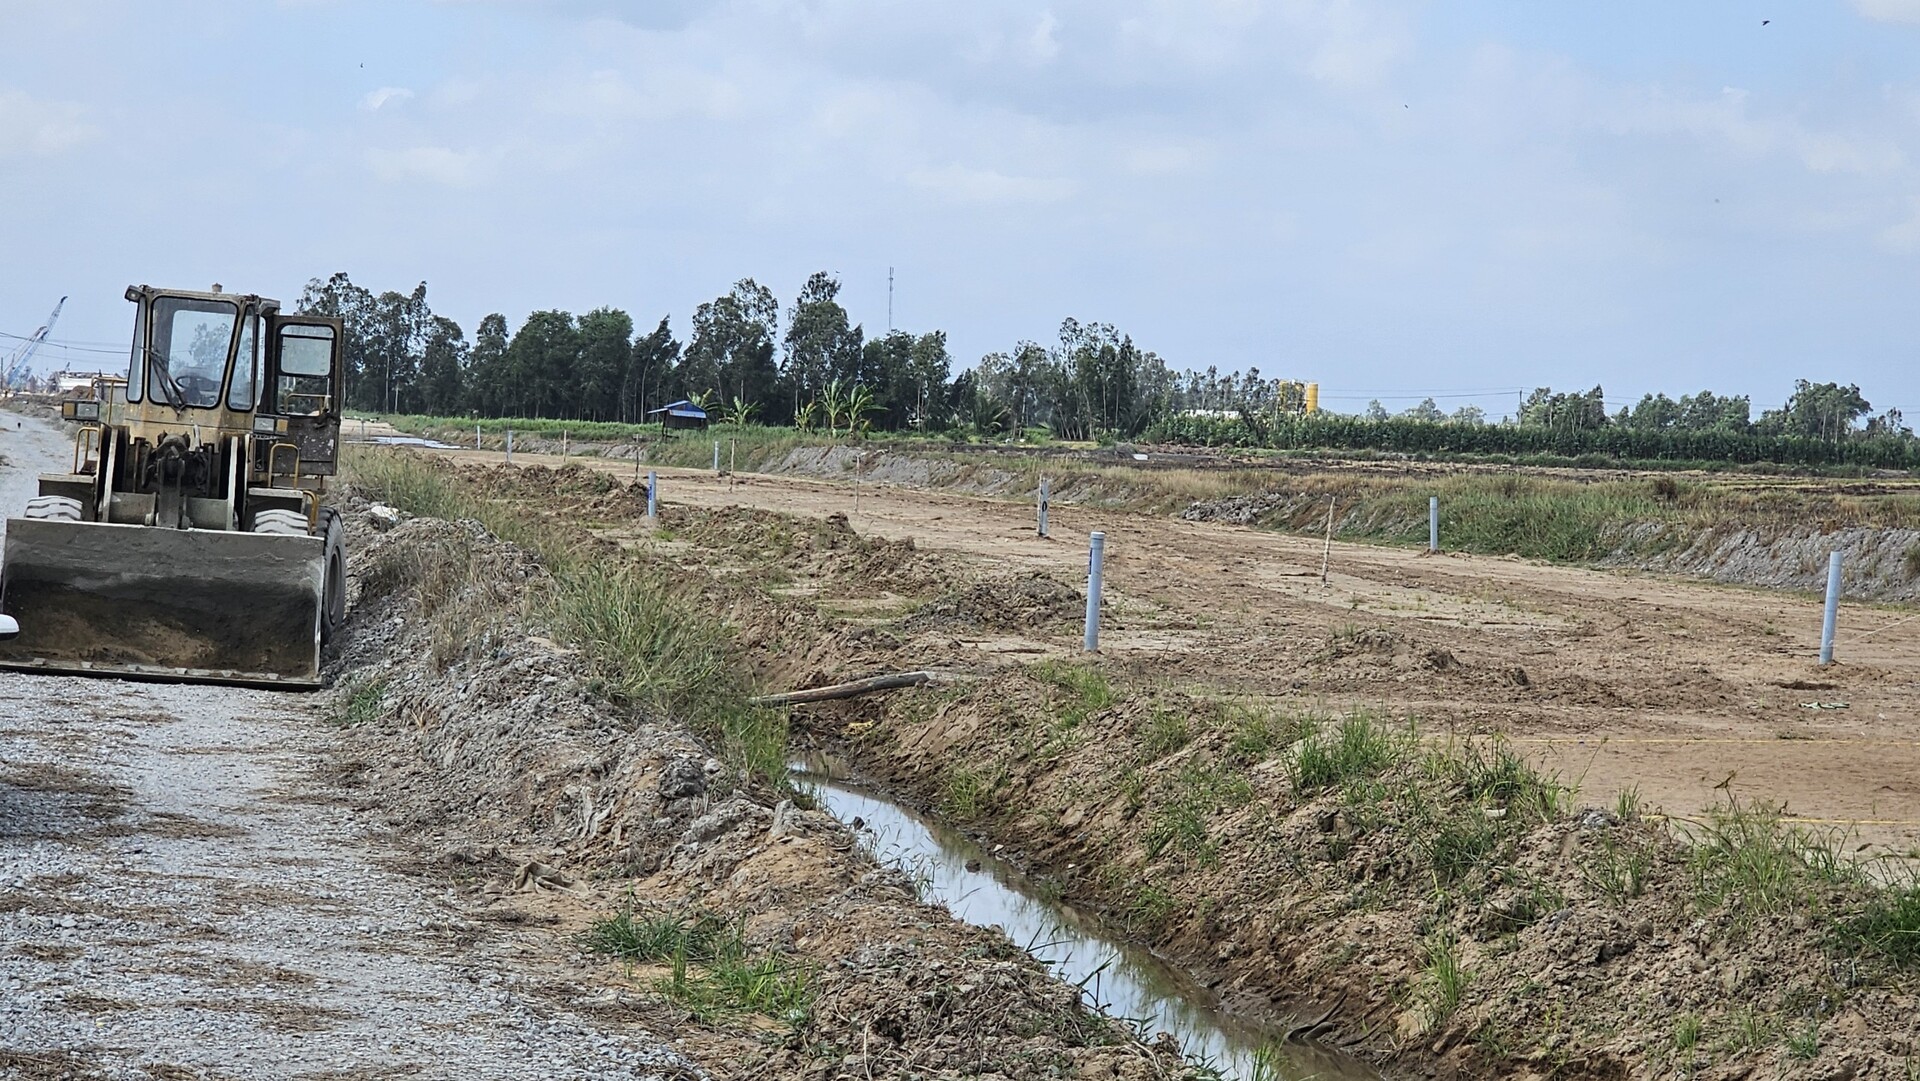 Cao tốc Cần Thơ - Cà Mau, đoạn qua địa bàn xã Lương Nghĩa, huyện Long Mỹ, tỉnh Hậu Giang đang được triển khai